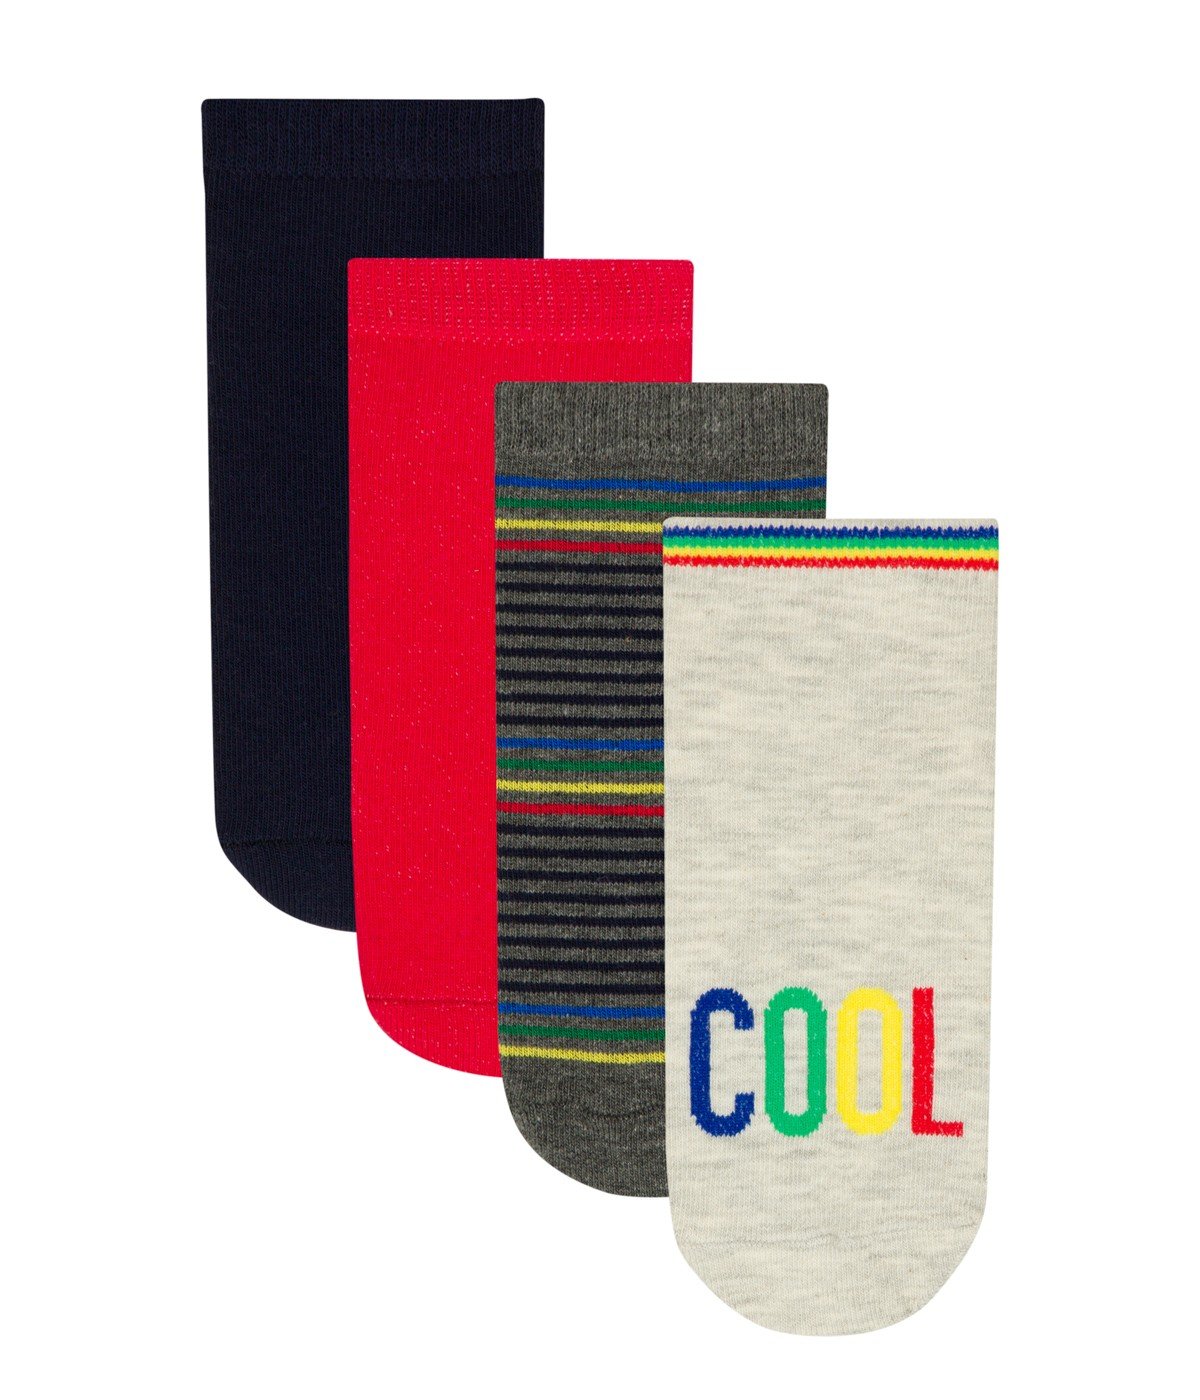 Boys Cool 4 In 1 Liner Socks